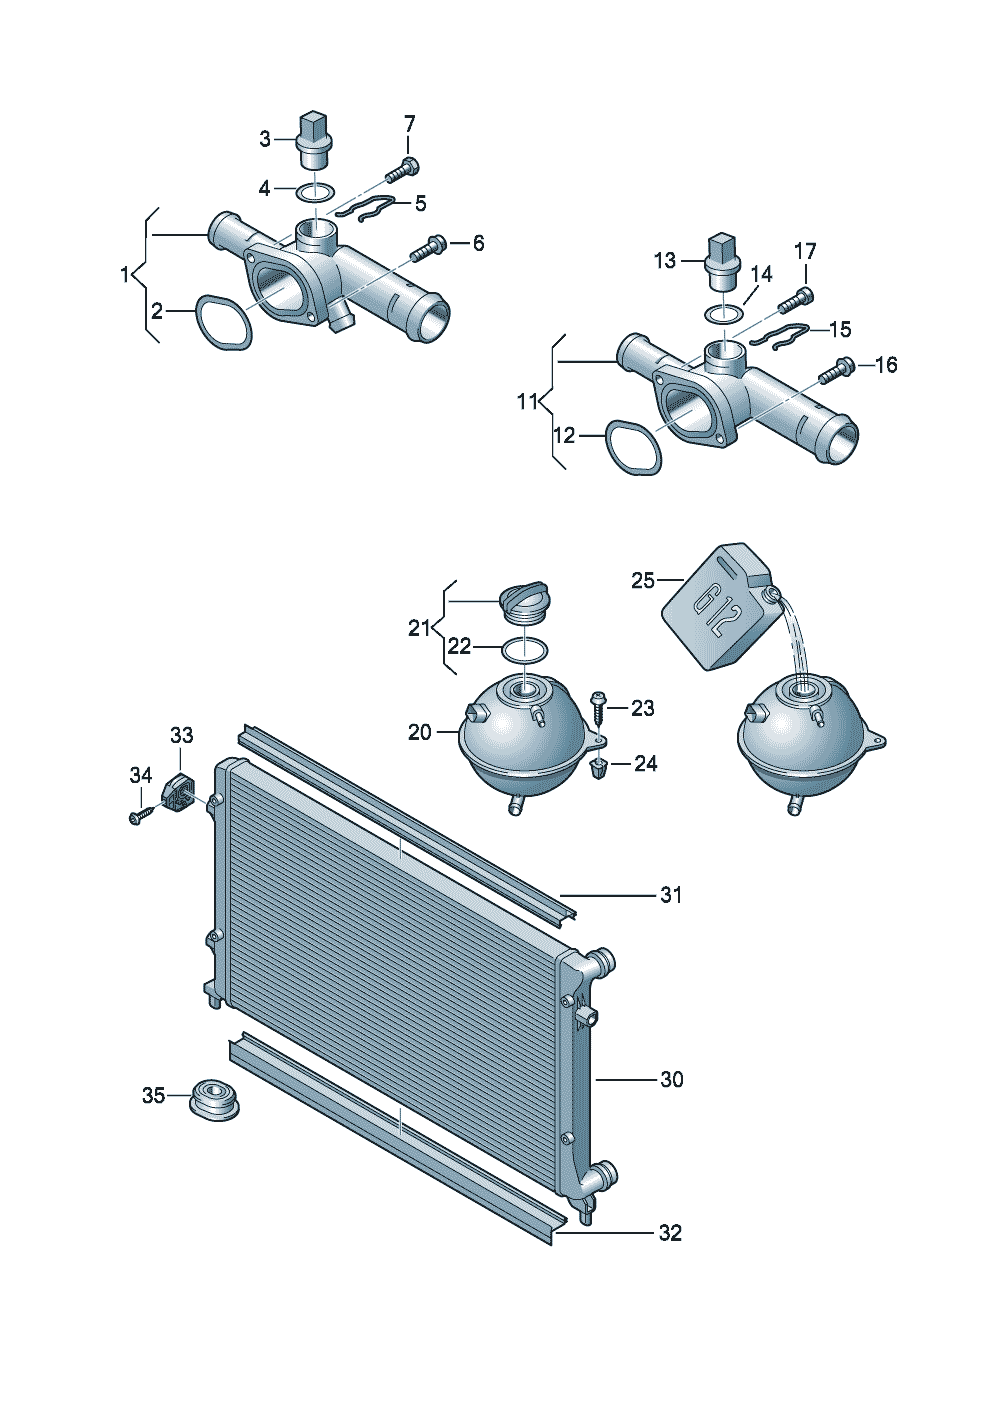 flangeReservoirCooler for coolant 1.6ltr. - Audi A3 Cabriolet - a3ca